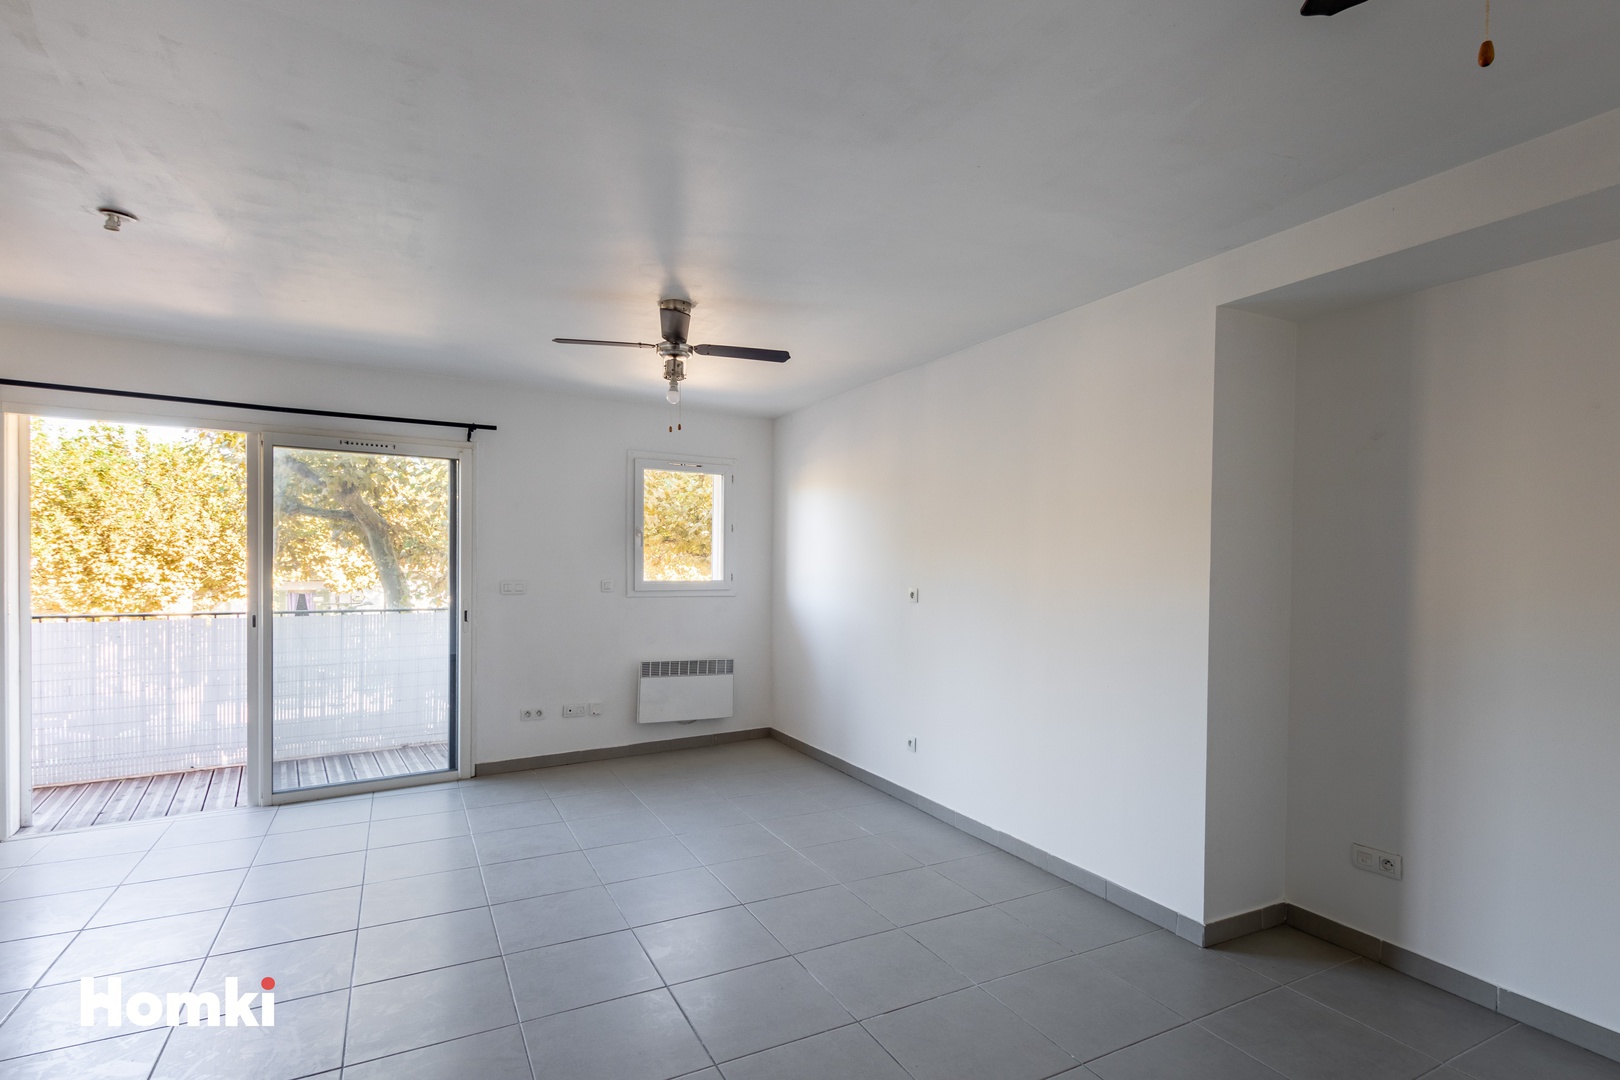 Homki - Vente Appartement  de 49.0 m² à La Crau 83260